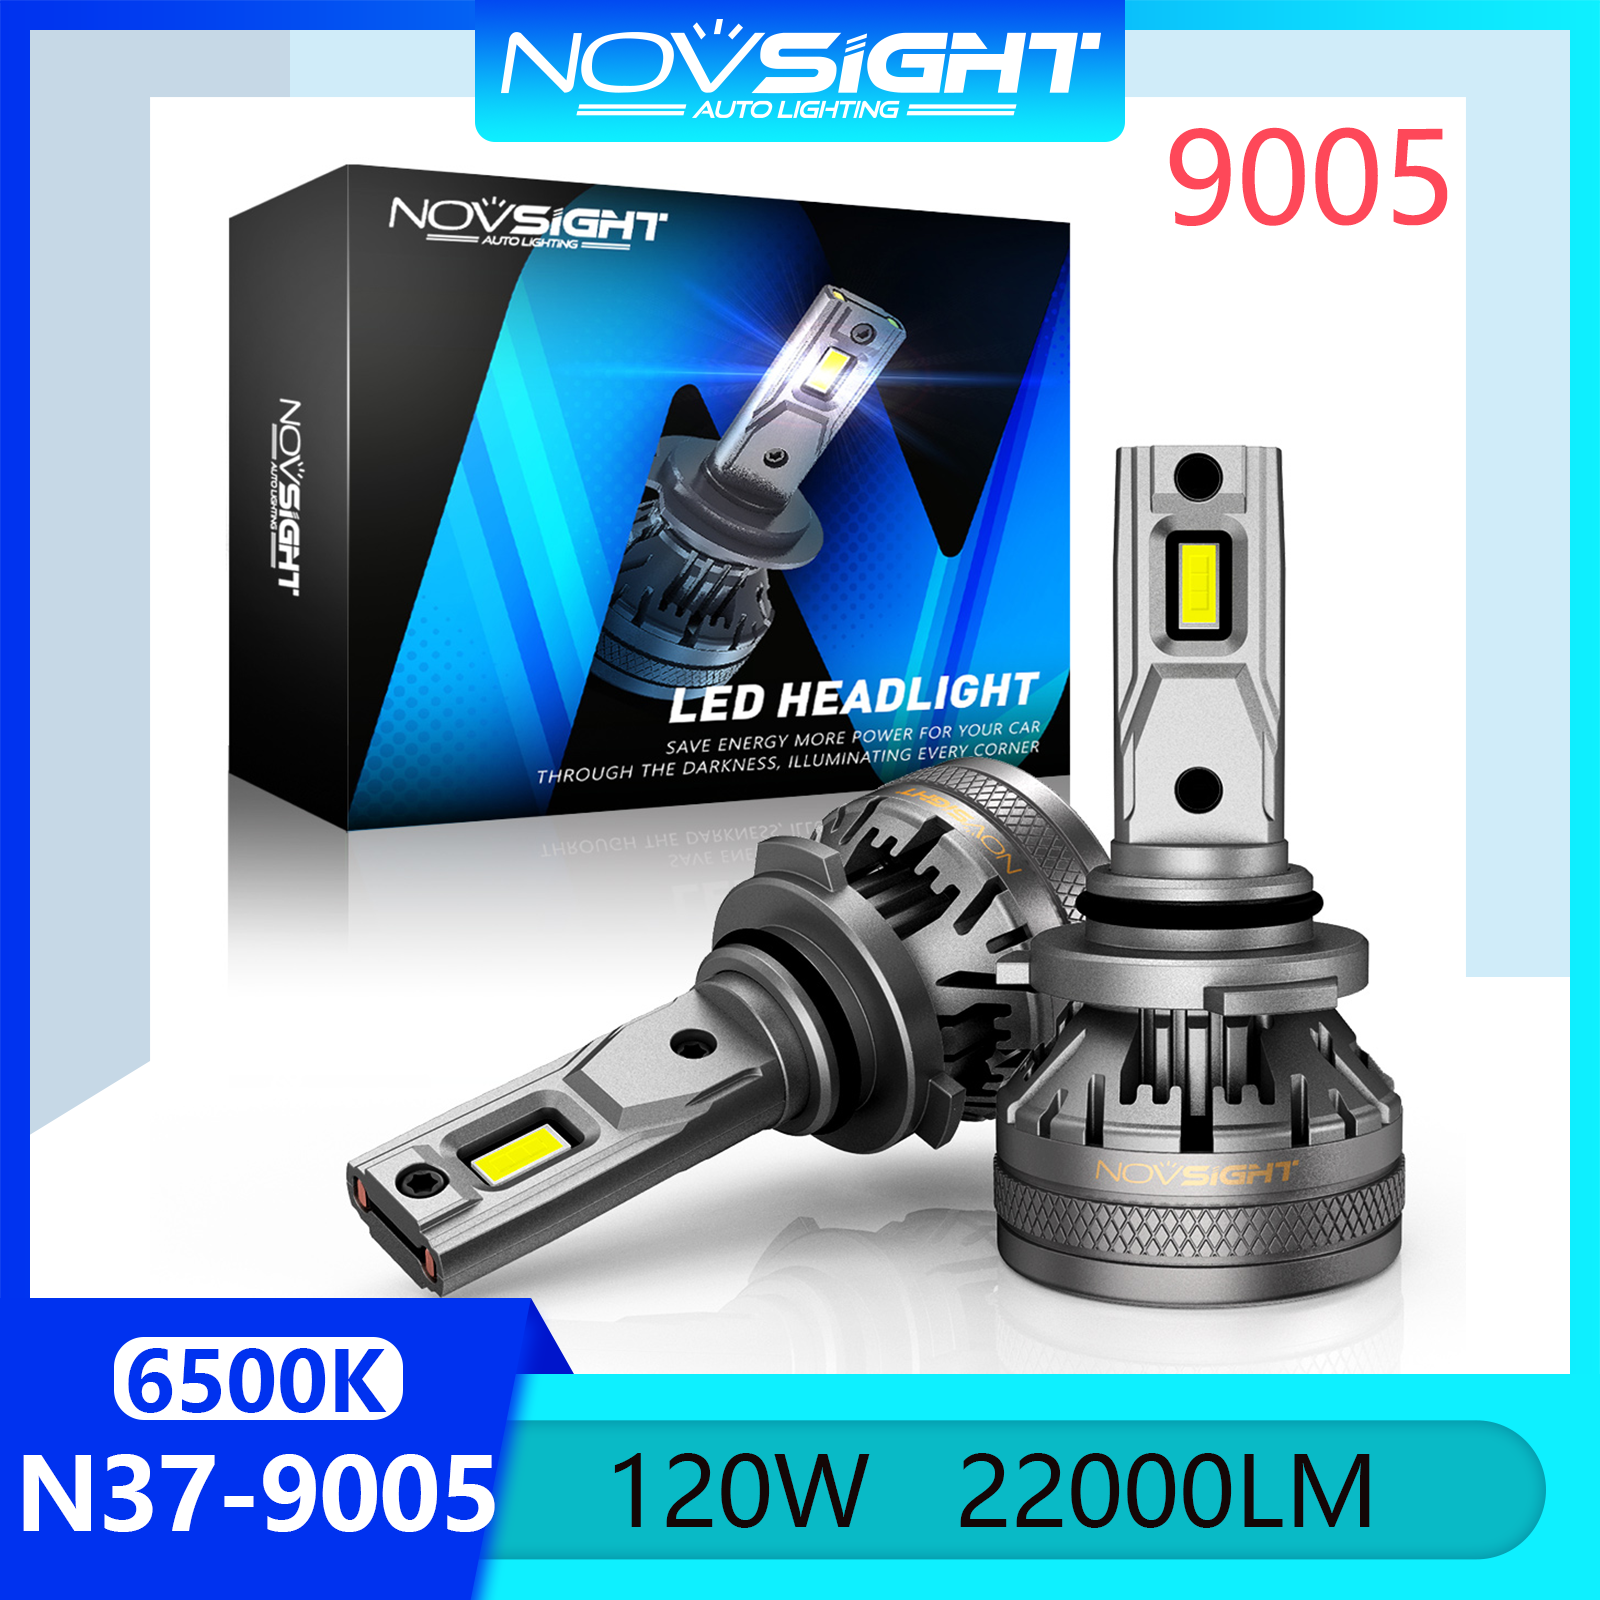 Novsight N37 6500K Đèn LED siêu sáng cho ô tô HB3 9005 Bộ đèn pha Led Đèn sương mù Chùm sáng cao / thấp 120W 22000LM Cắm và chạy trong kho Cặp bảo hành 2 năm Miễn phí vận chuyển